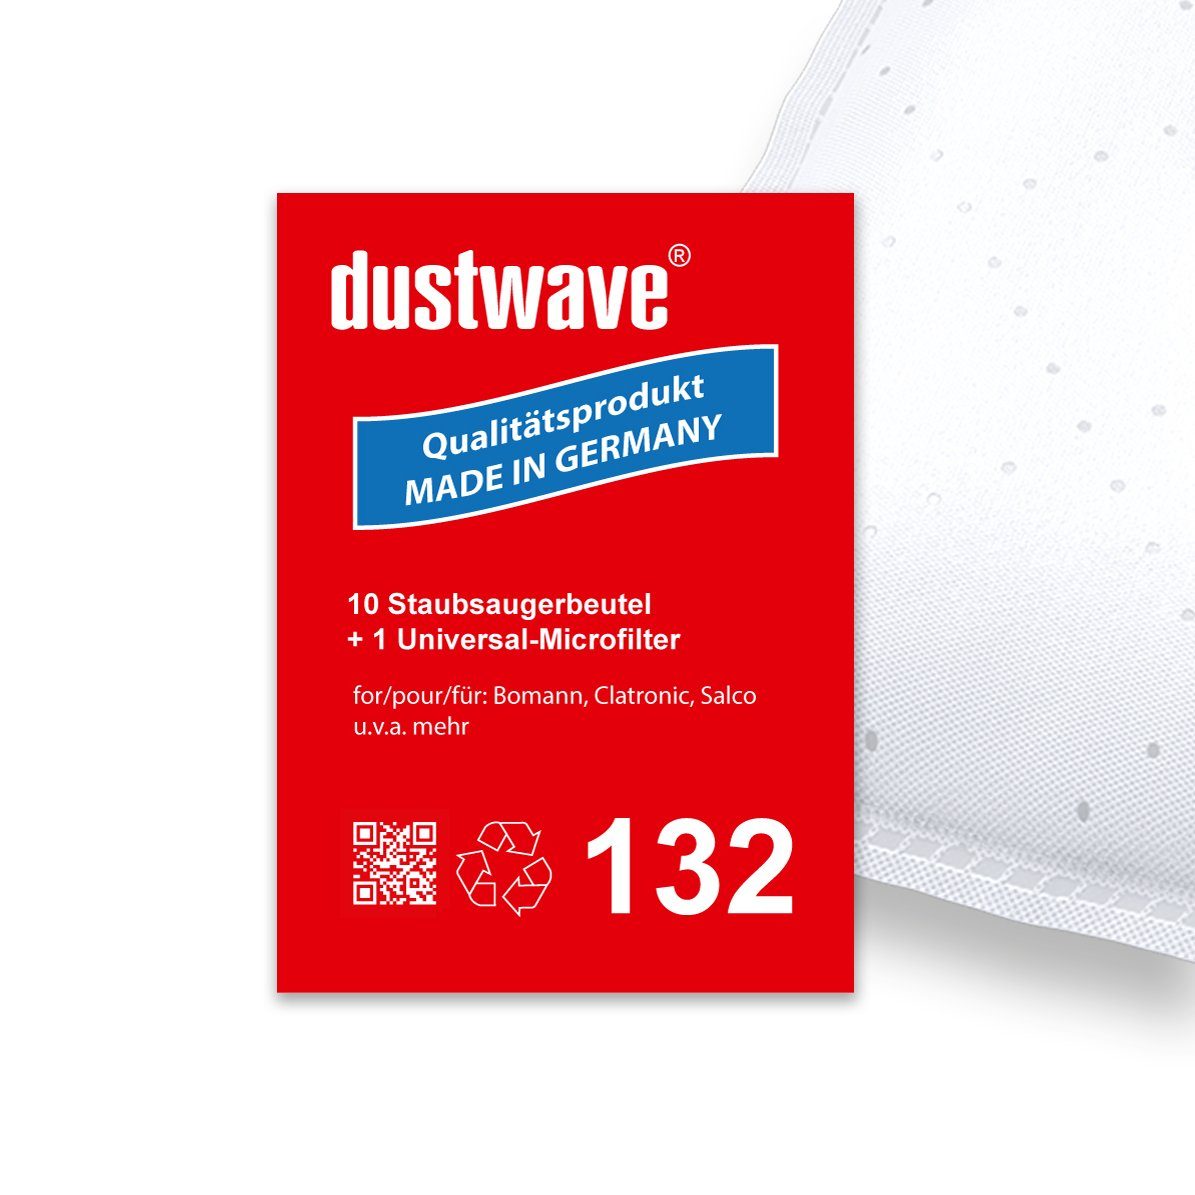 Dustwave Staubsaugerbeutel Sparpack, passend für Circon 80210005, 10 St., Sparpack, 10 Staubsaugerbeutel + 1 Hepa-Filter (ca. 15x15cm - zuschneidbar)